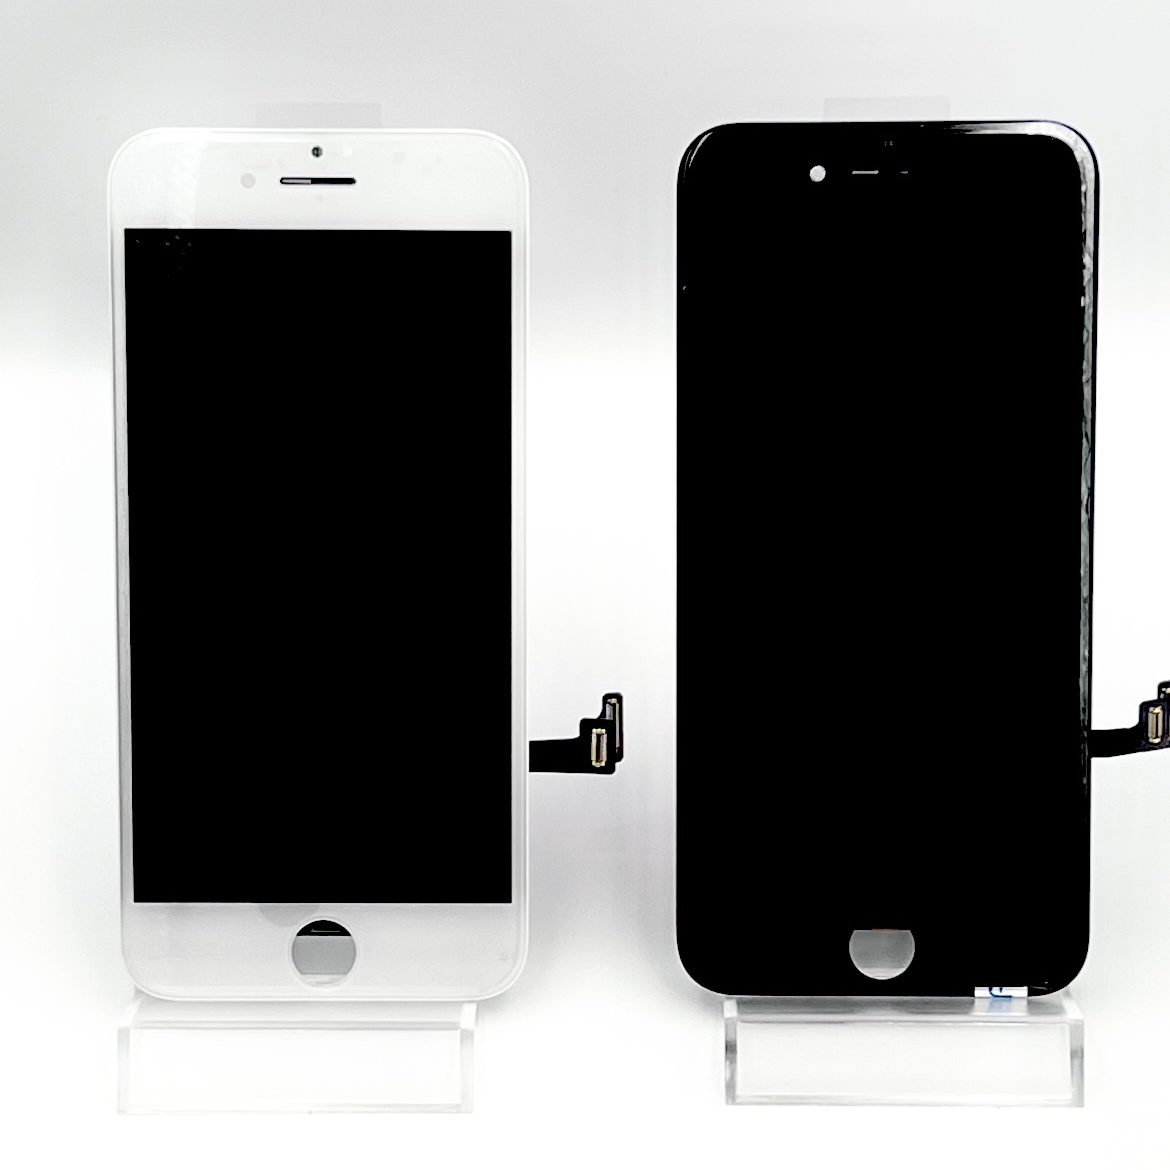 รีวิว iPhone 7, iPhone 7 Plus ครั้งแรกกับการกันน้ำและกล้องคู่